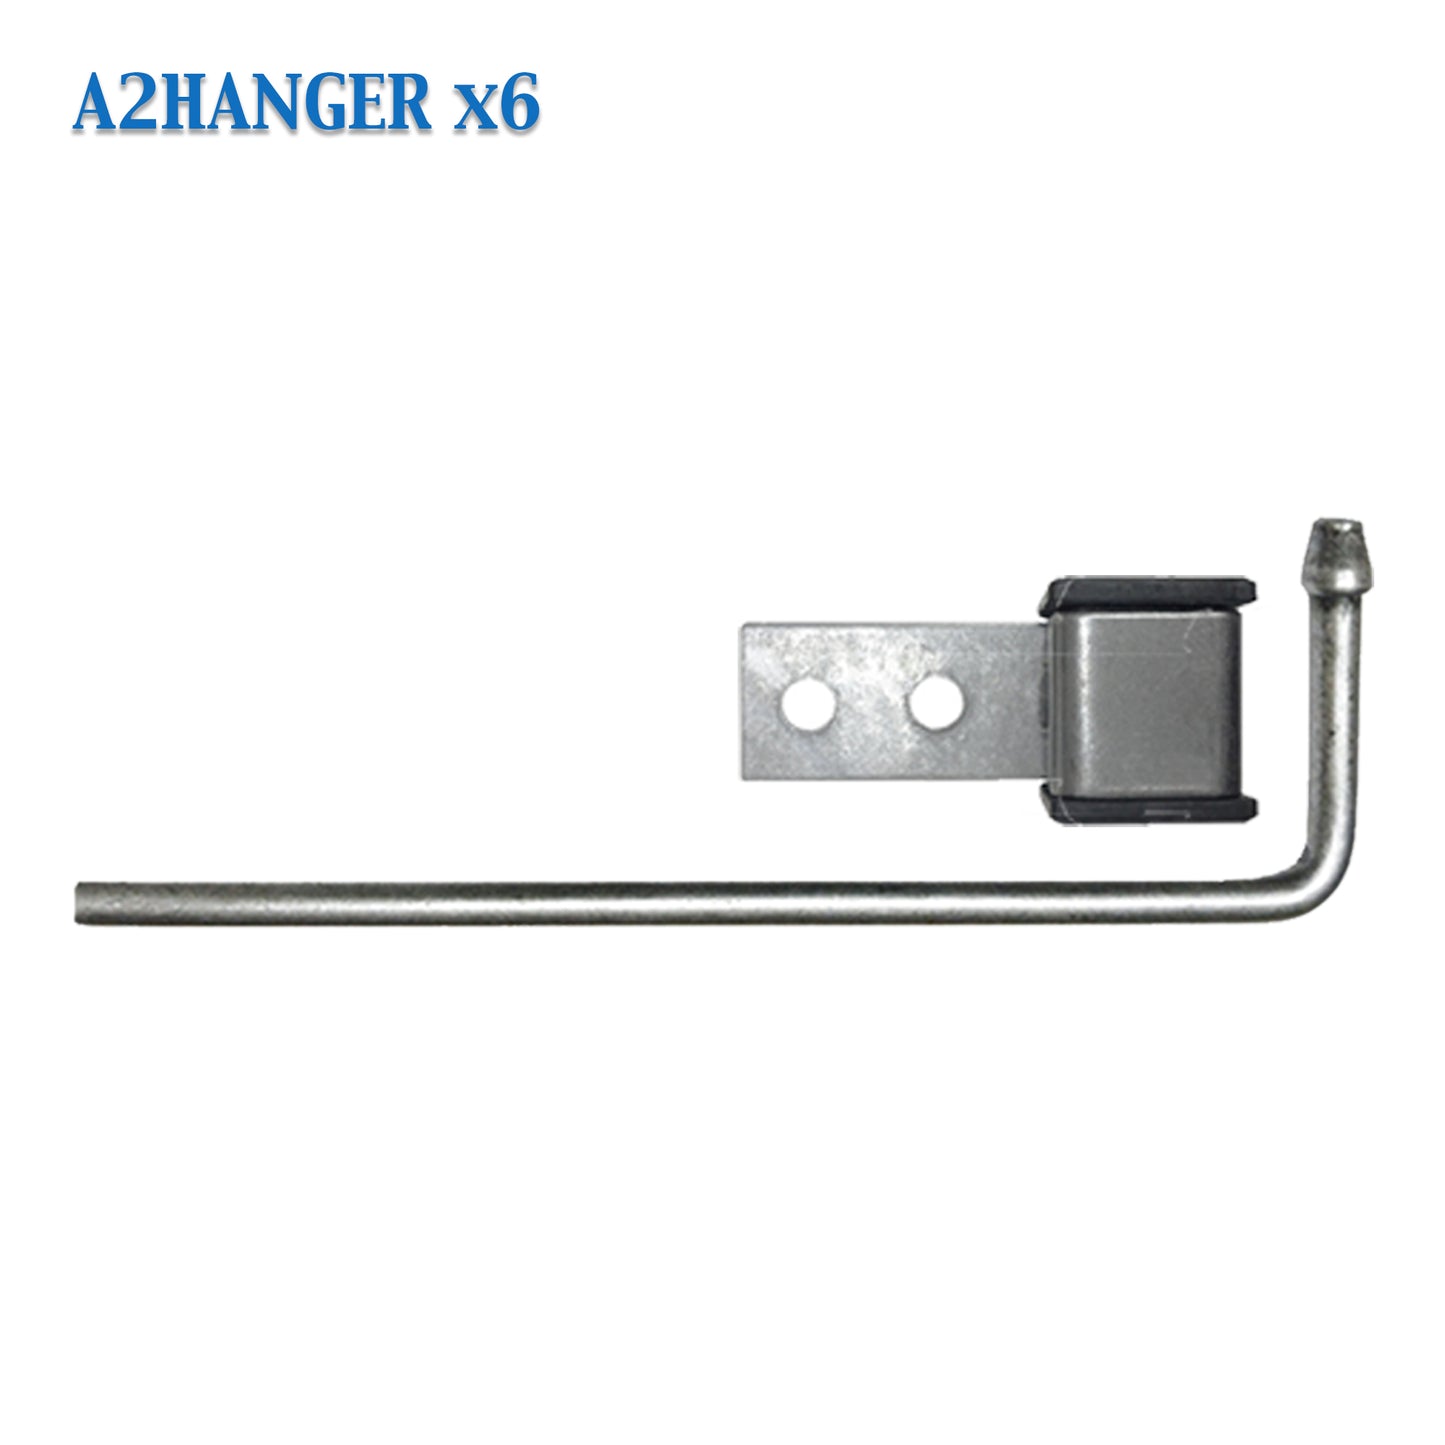 A2HANGER Exhaust Hanger Southern J Hook 3/8" Arrow Head Rod w/ Rubber Grommet